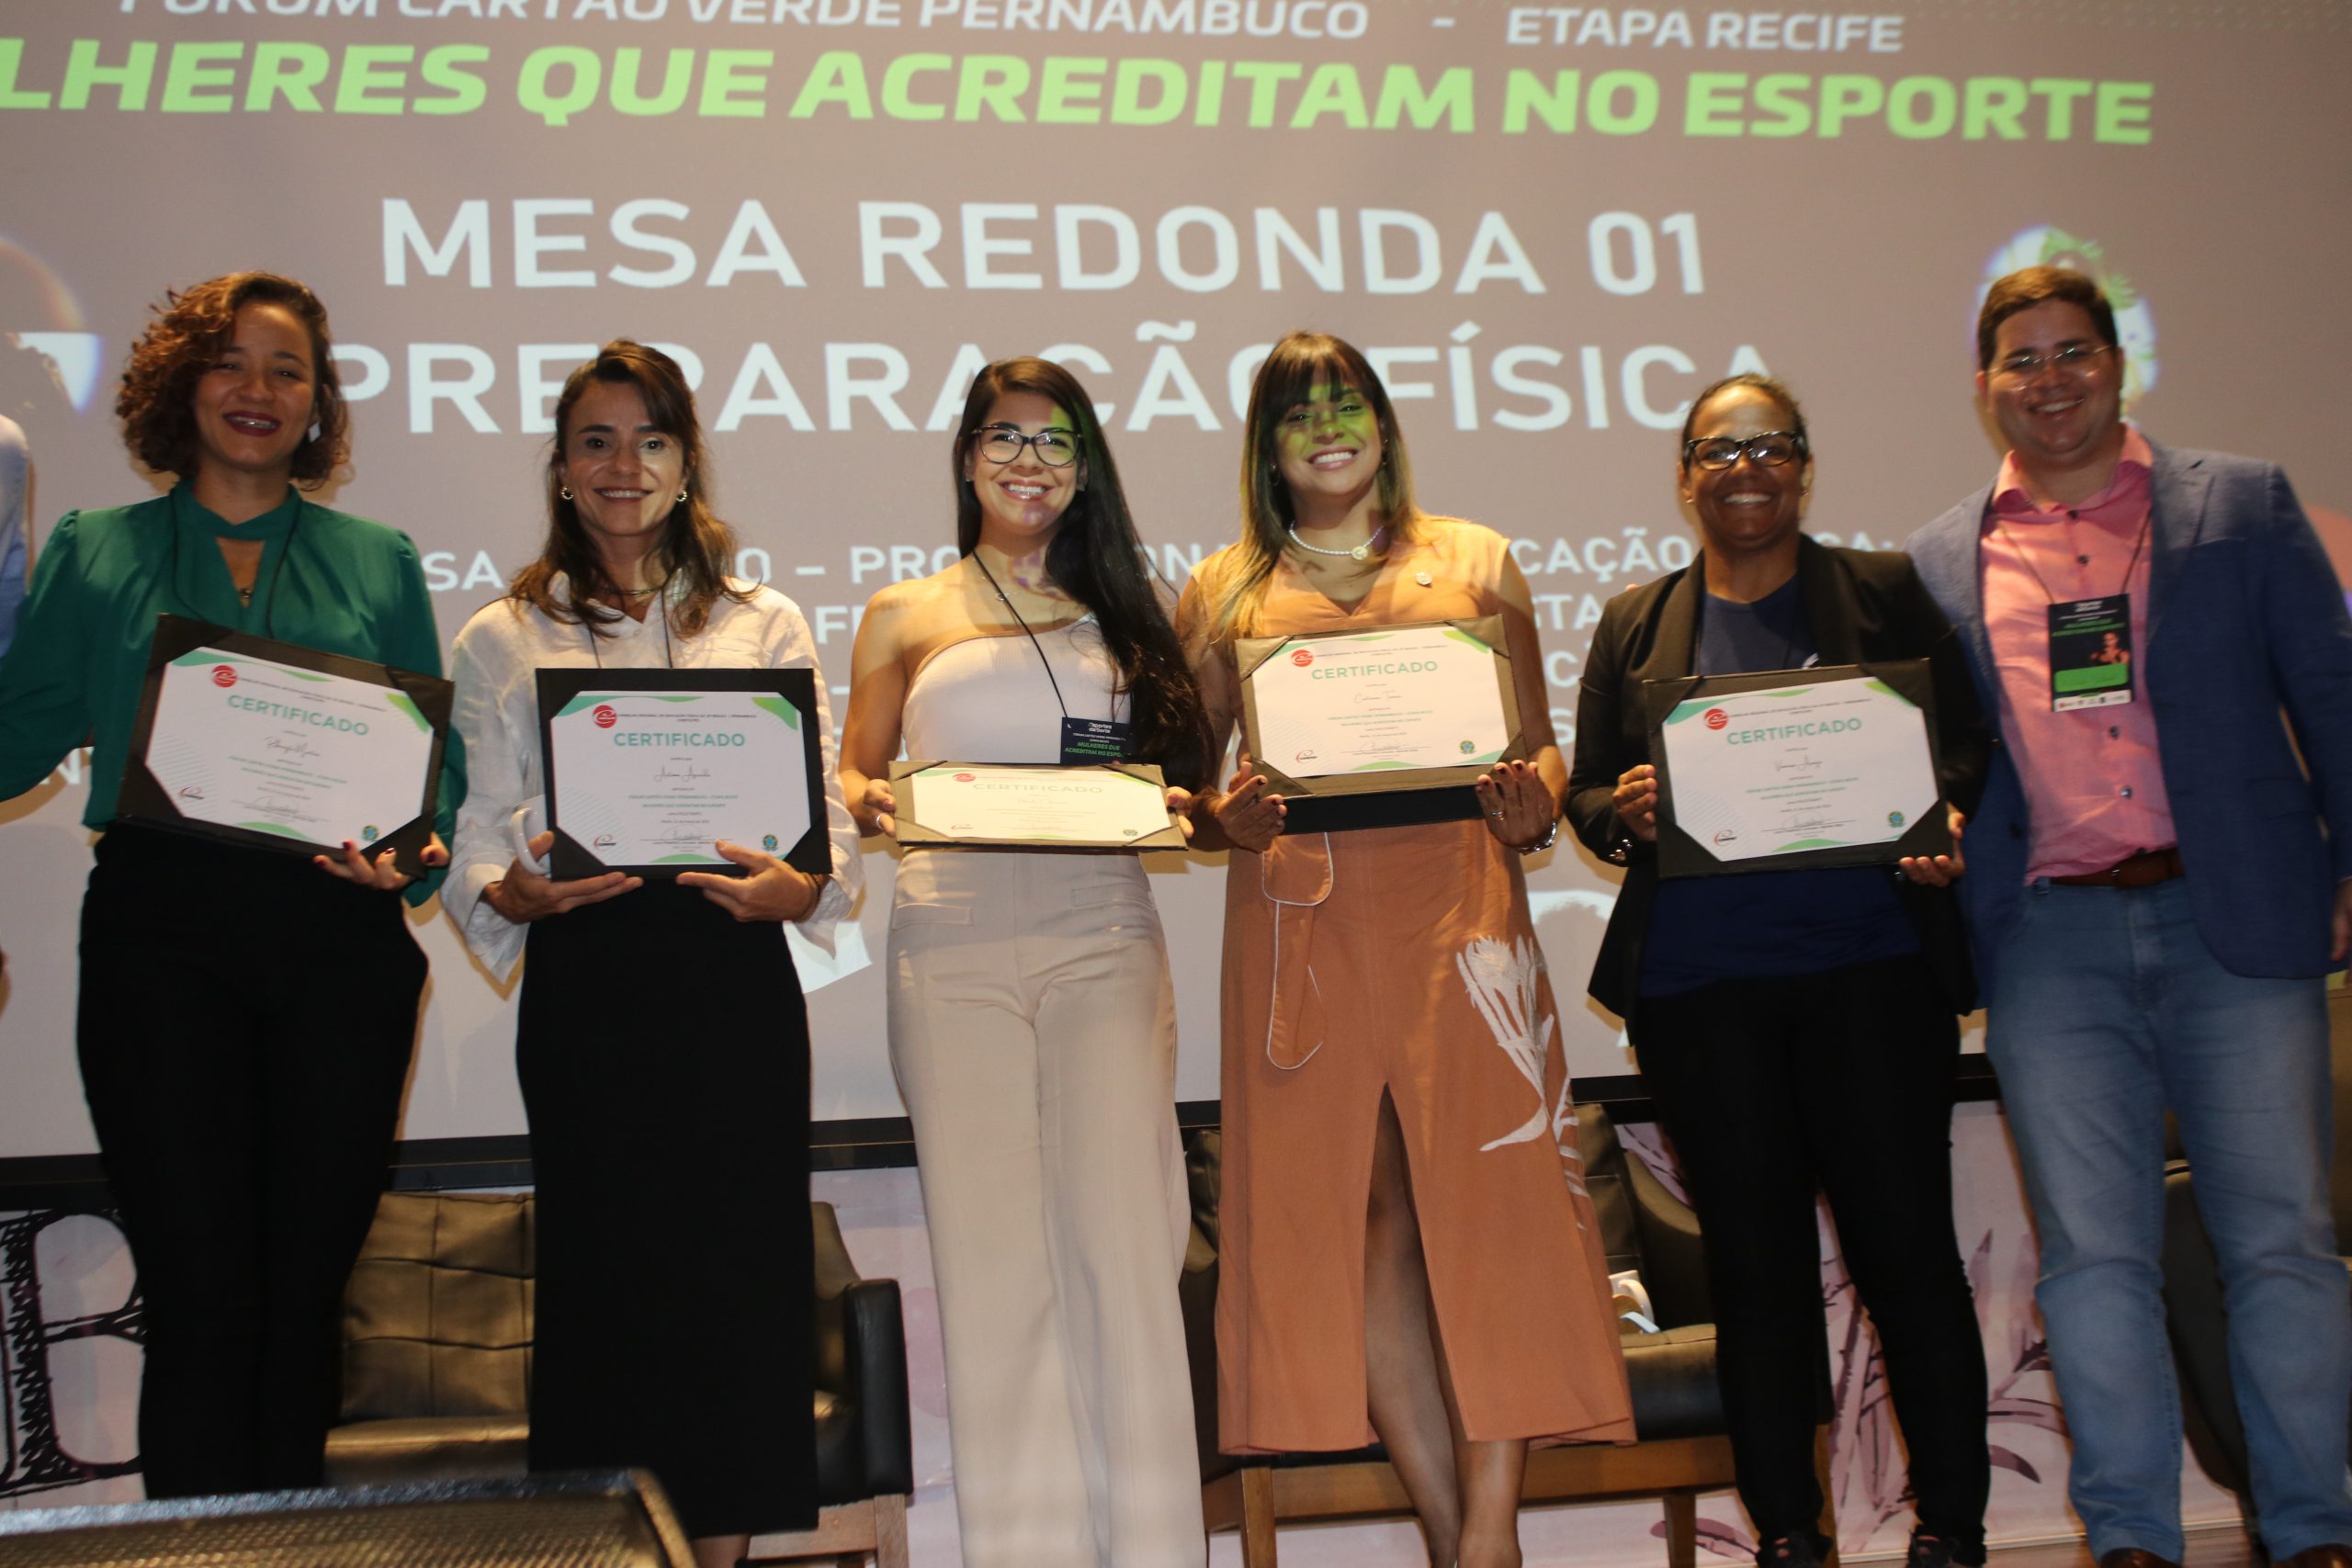 Você está visualizando atualmente Fórum Cartão Verde Pernambuco destaca o papel das mulheres no esporte